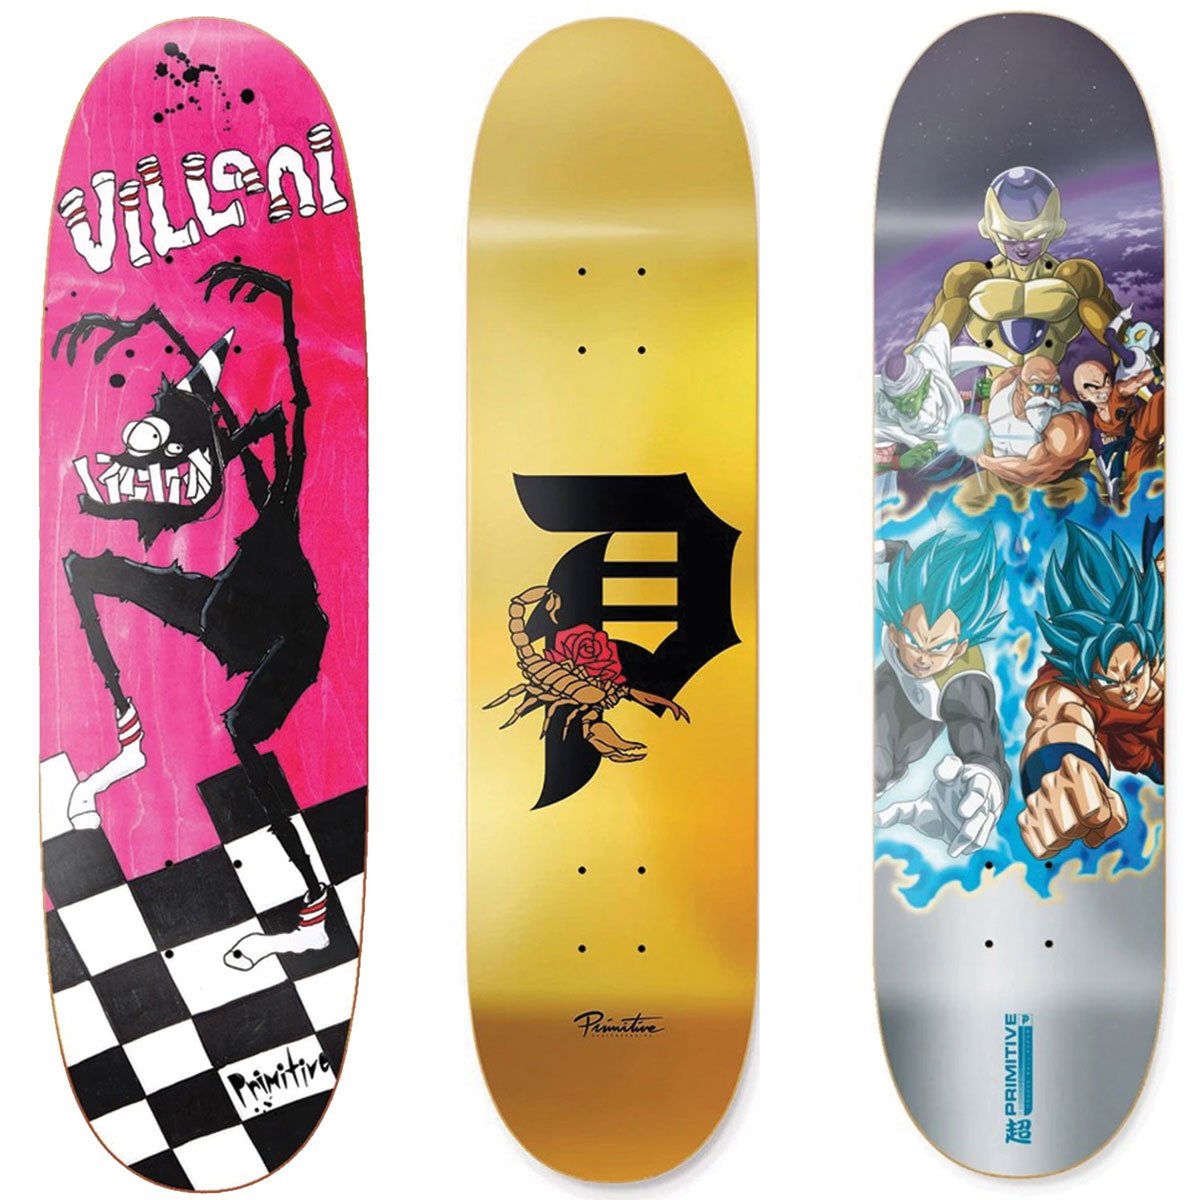 New Skateboards from Primitive